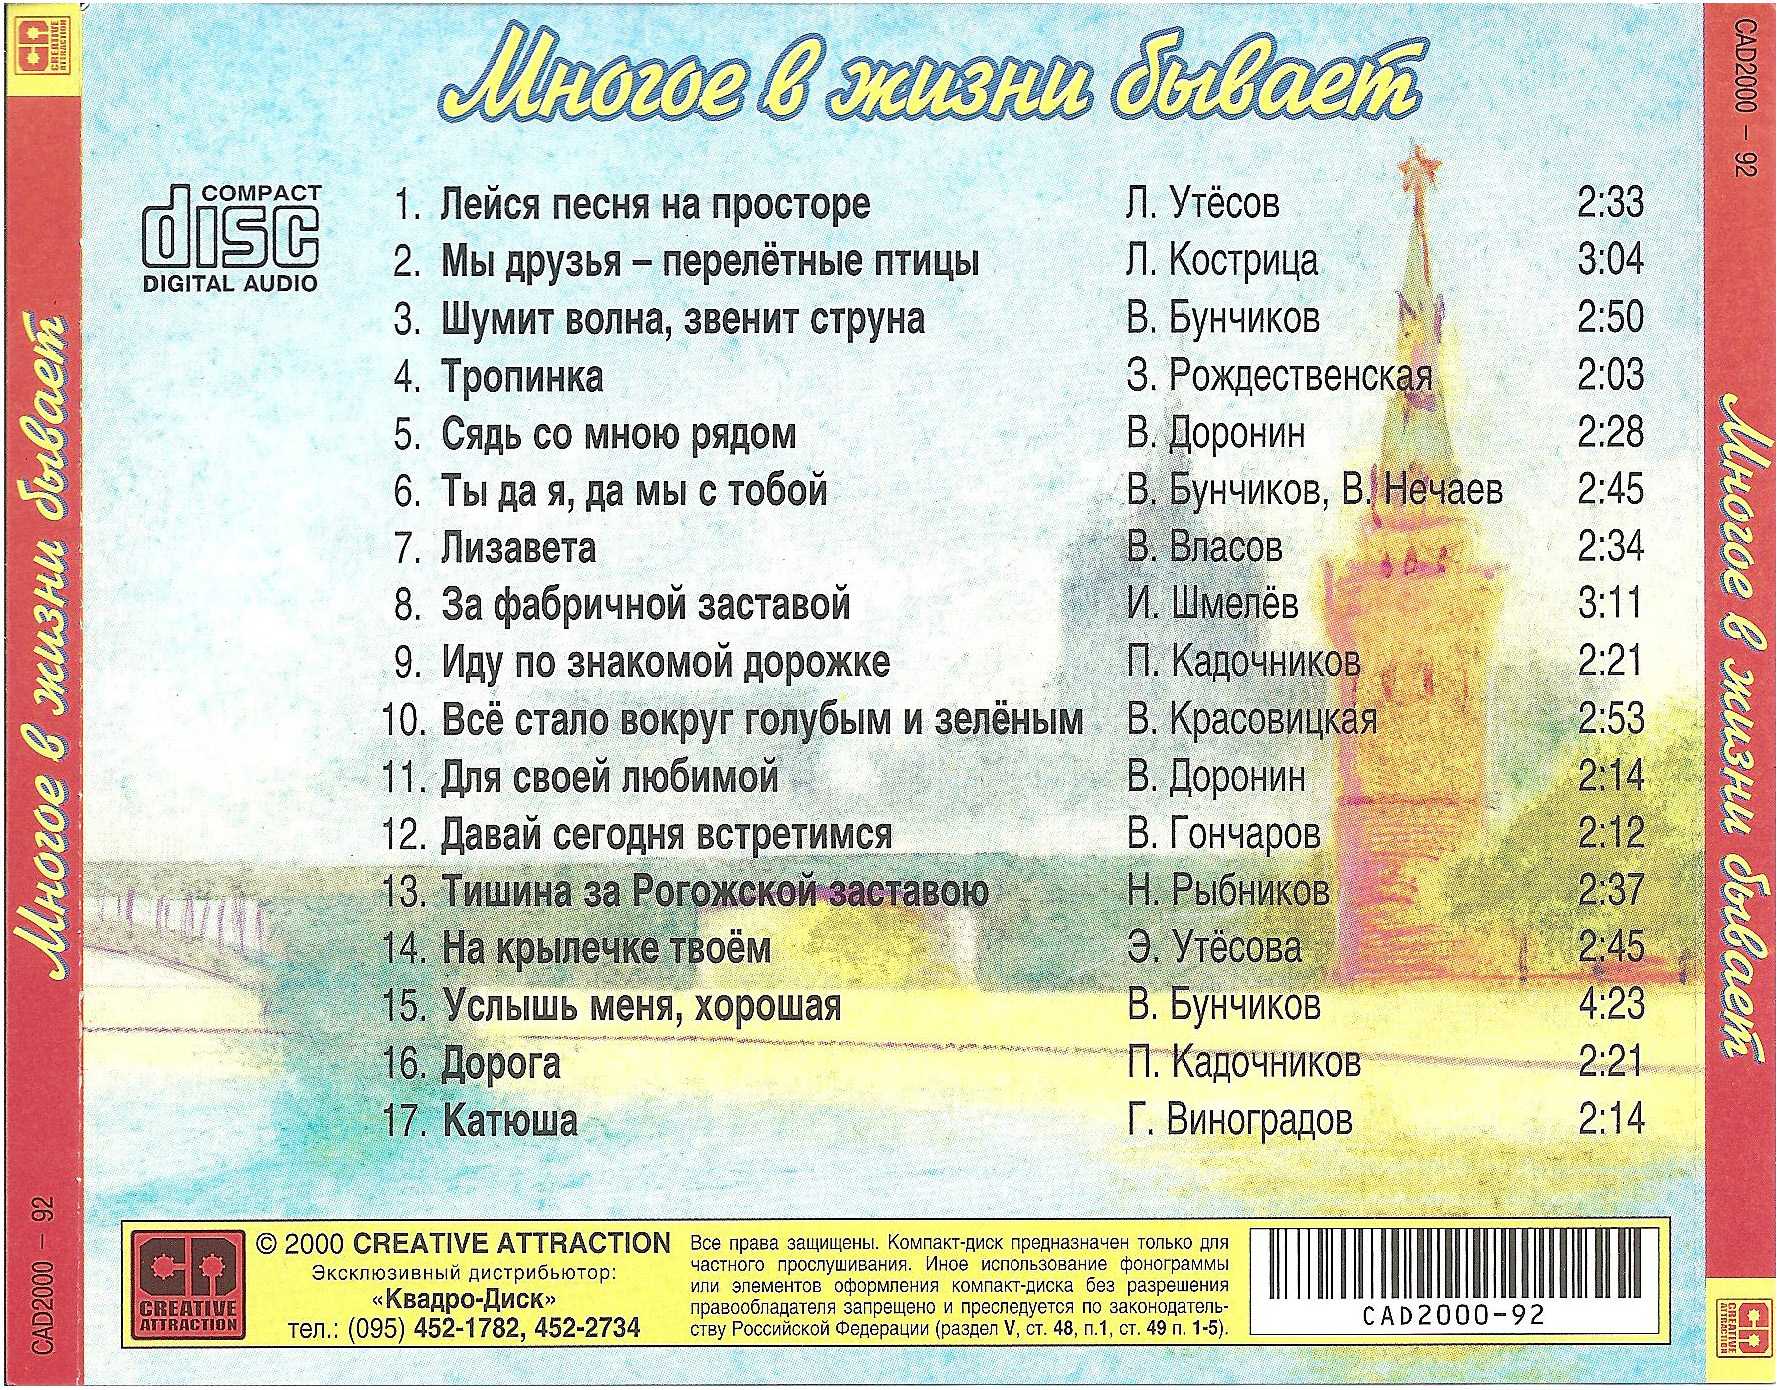 Текст самых известных песен. Список песен. Известные советские песни список. Названия известных песен. Русские песни список.